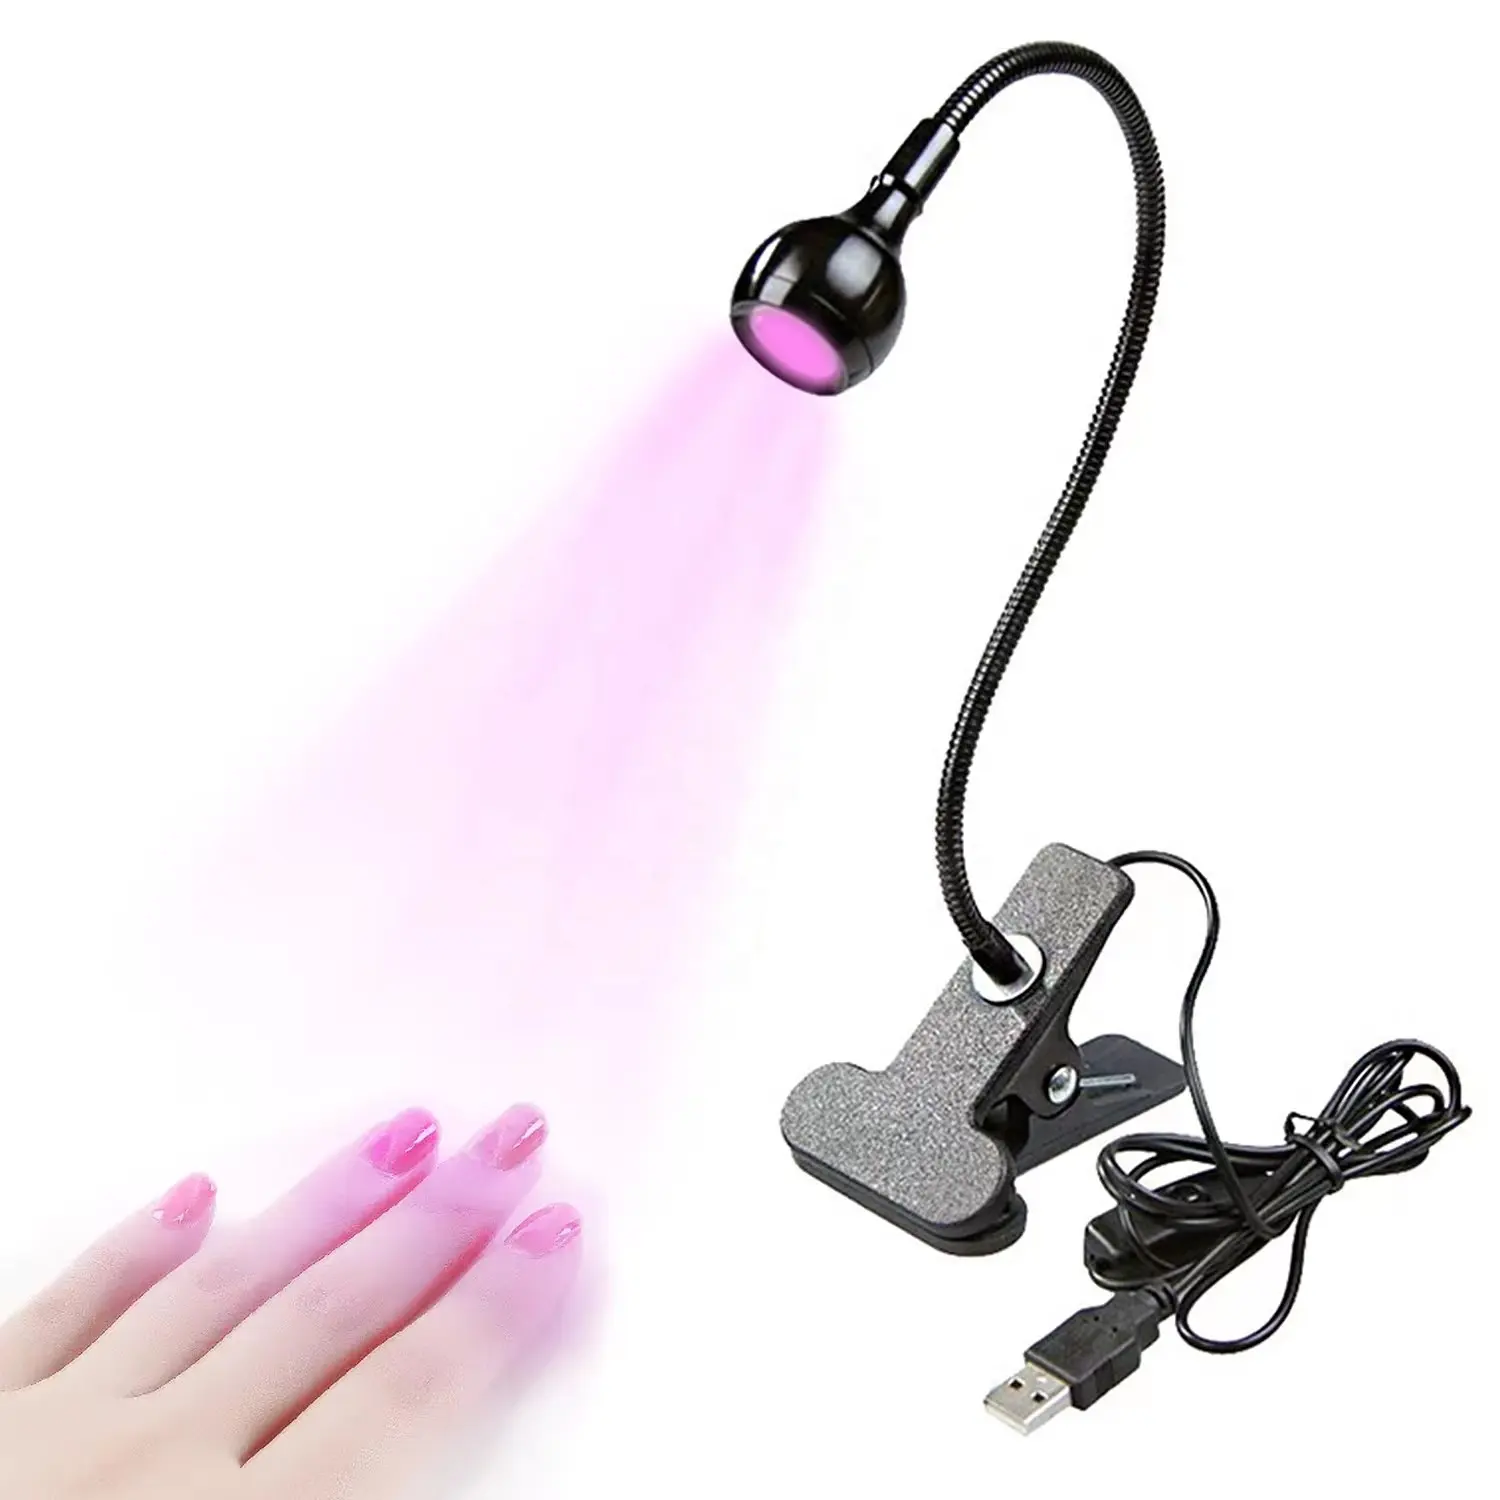 3W UV LED Desk Light Flexible Gooseneck and Clamp Mini Desk Light Portable Glue Curing Lamp Light for Nail